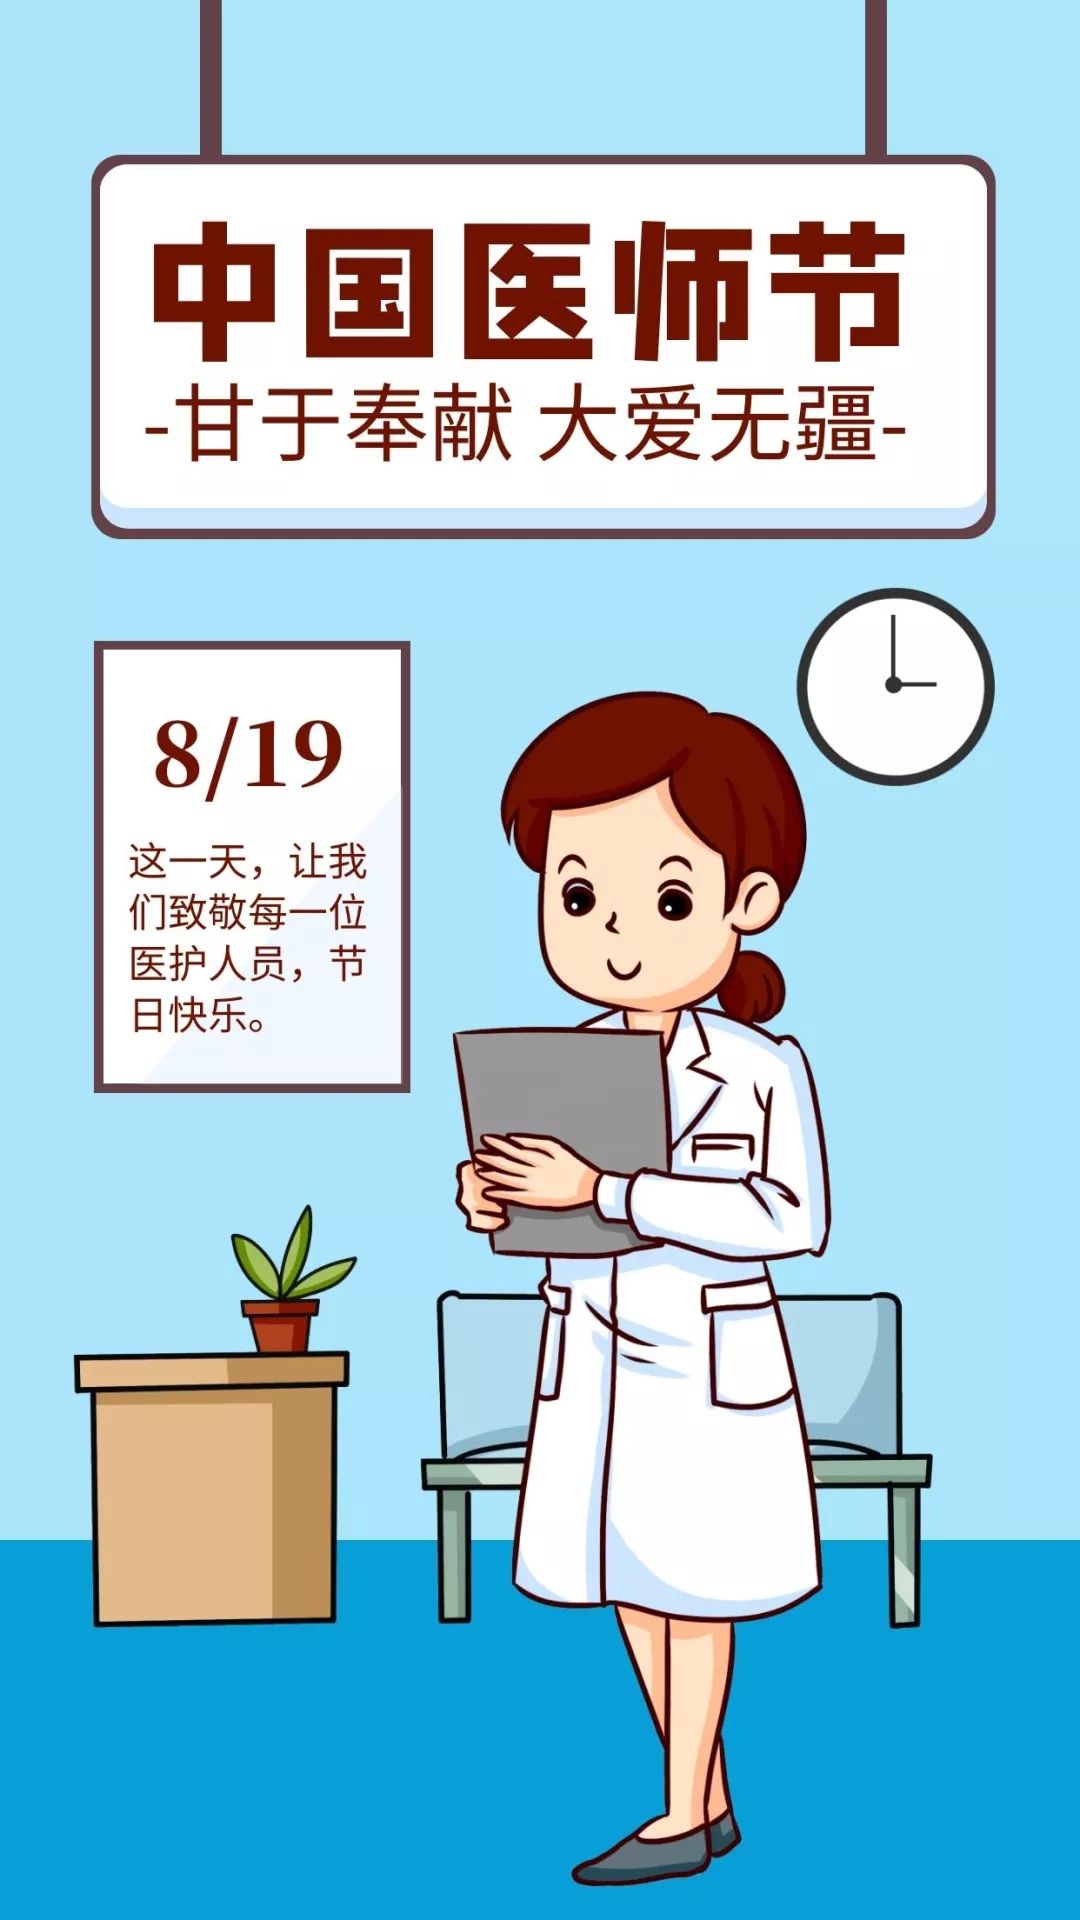 【杏林祝福】中国医师节,感谢每一位伟大的"普通人"